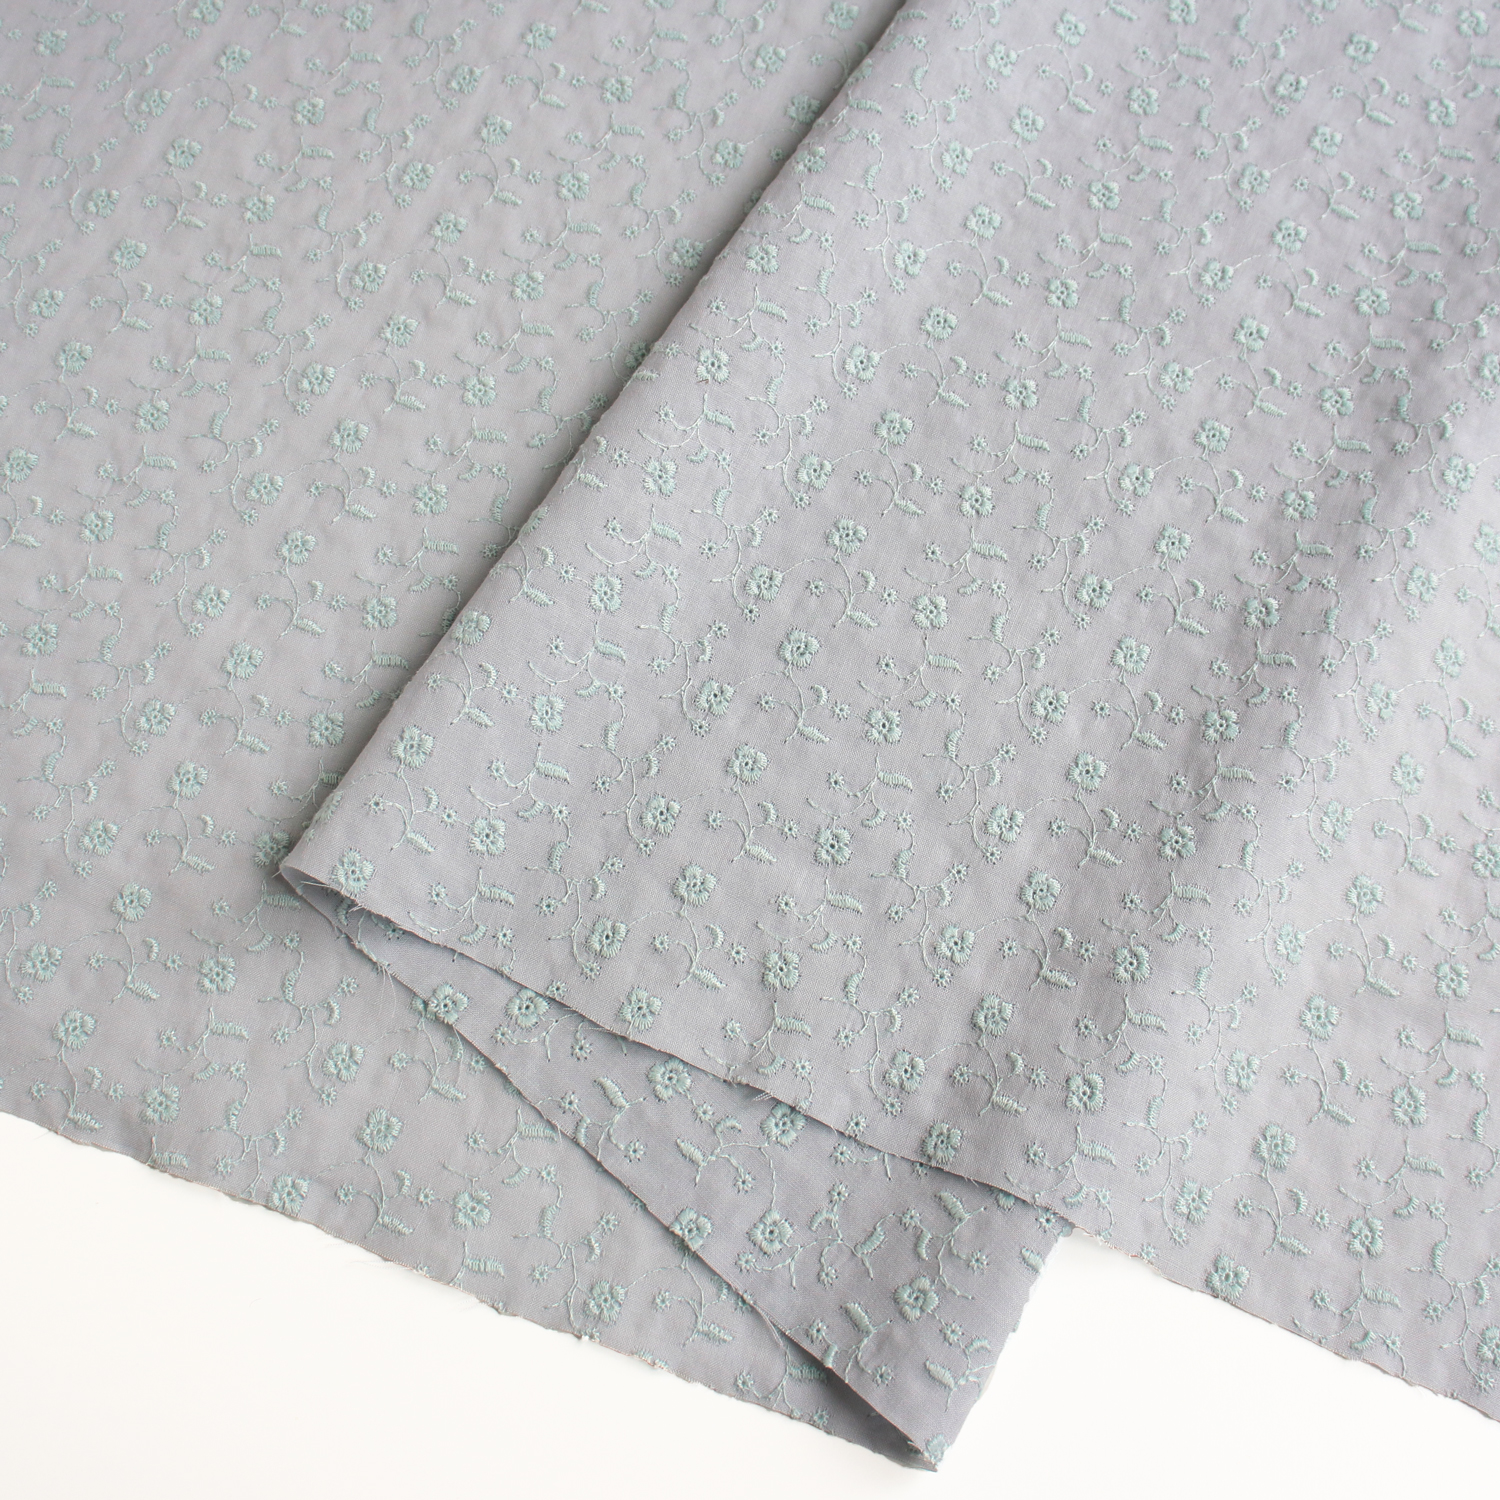 AL1010-35 cotton lace fabric, Width 100cm, 1m/unit (m)